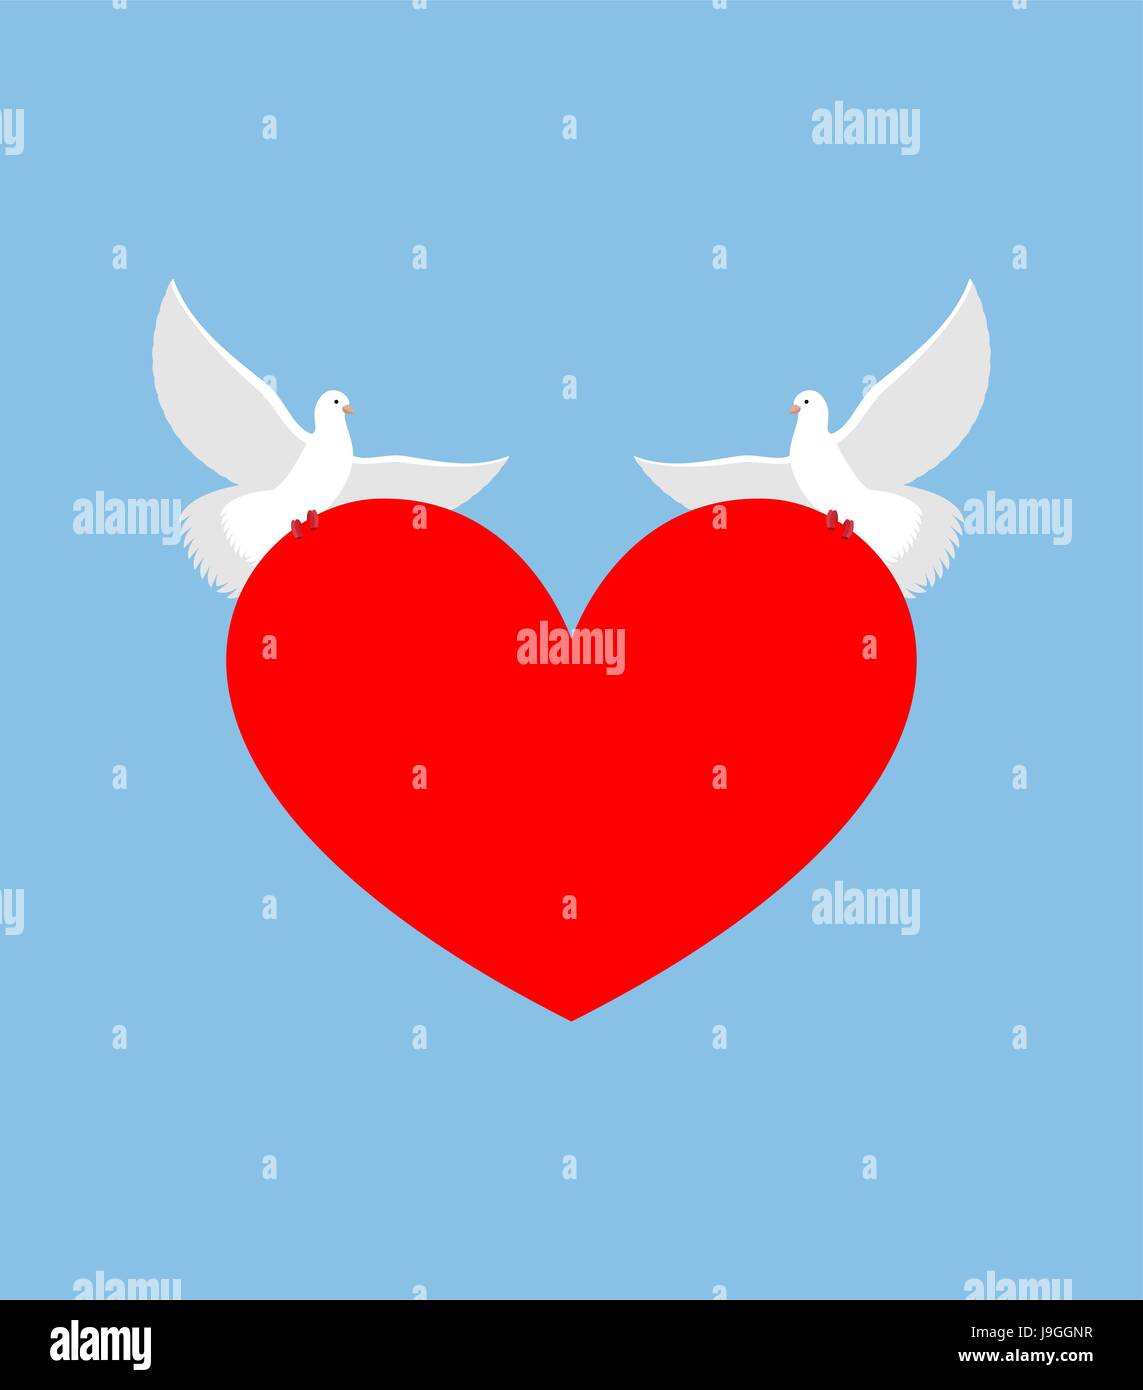 Weiße Taube hält Herz. Zwei weiße Vogel ist Symbol der Reinheit. Rotes Herzsymbol der Liebe. Zwei Turteltauben tragen Liebe. Element für den Valentinstag. Stock Vektor